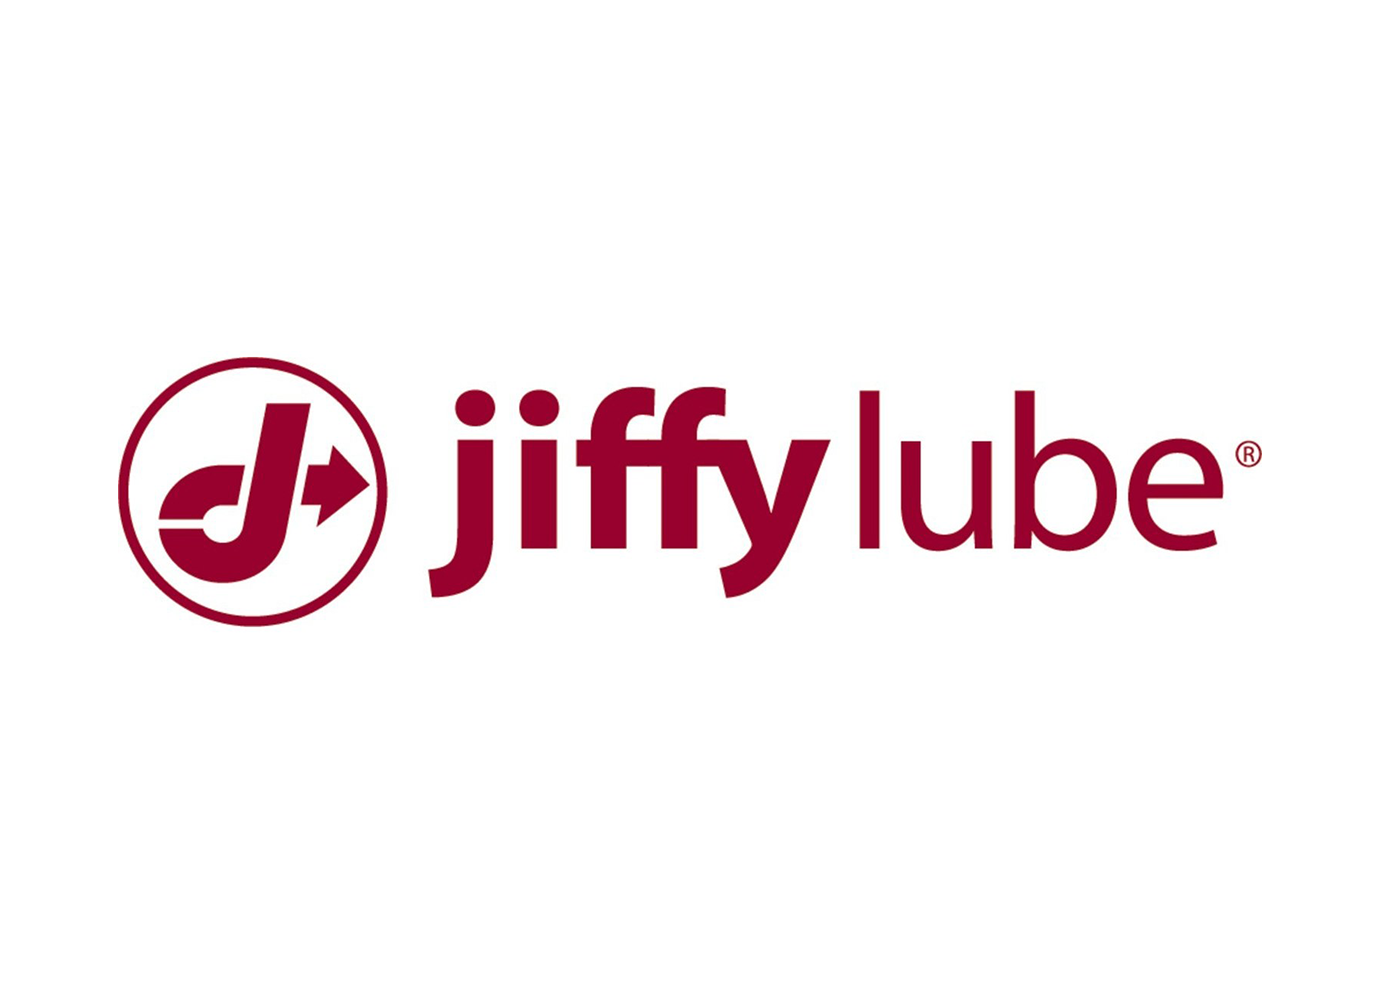 jiffy lube logo